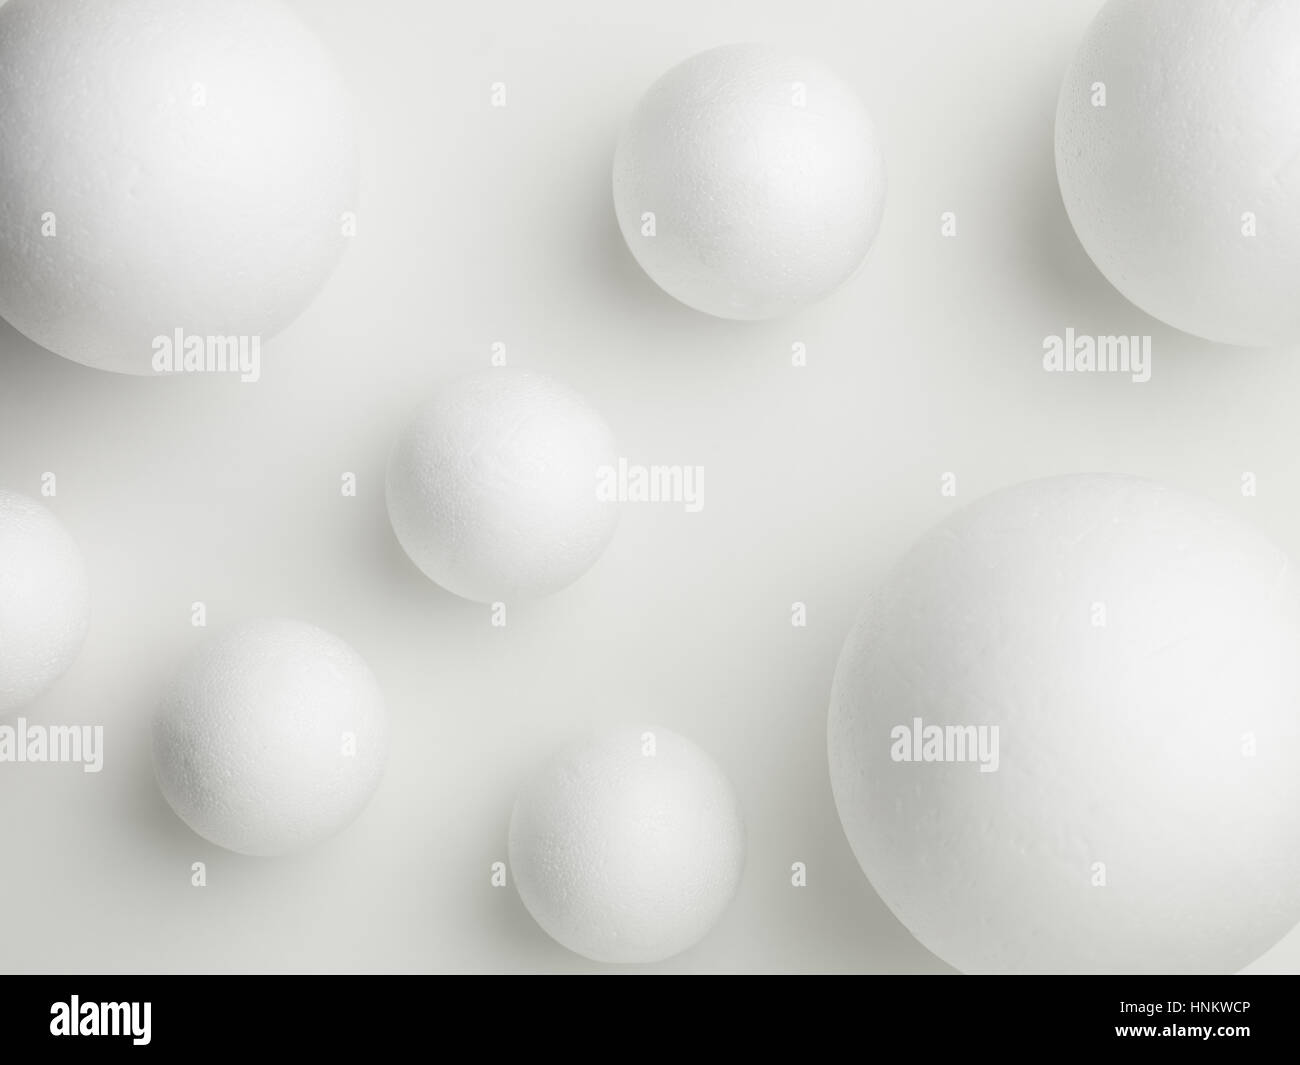 Vista superior de las esferas blancas sobre un fondo blanco. Foto de stock